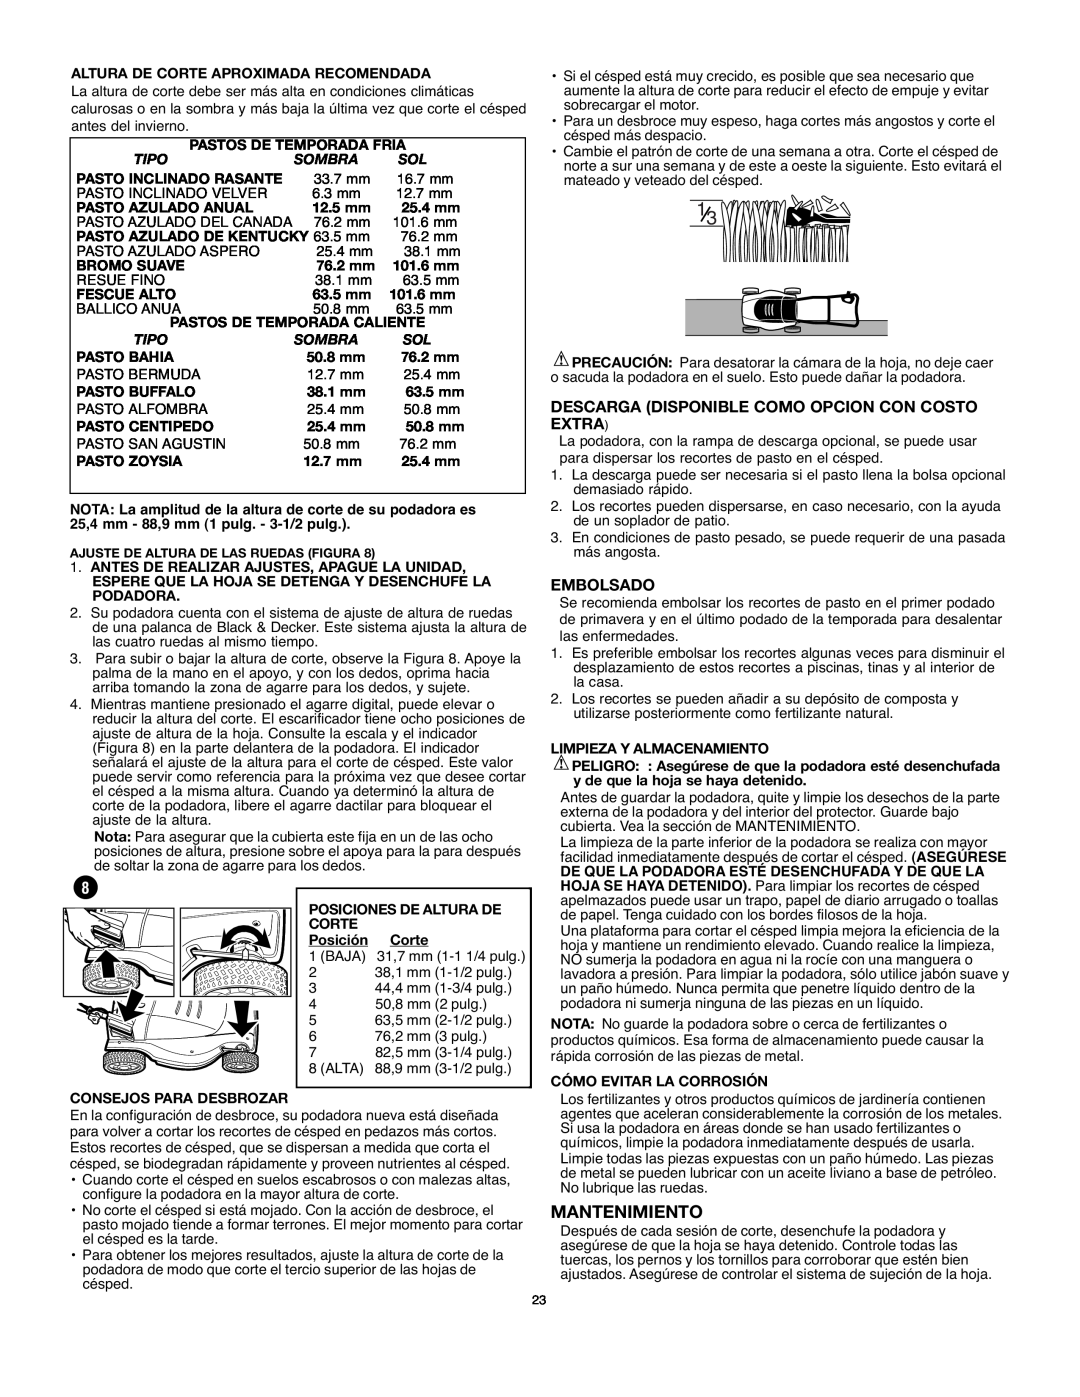 Black & Decker MM875 Mantenimiento, Descarga Disponible Como Opcion Con Costo Extra, Embolsado, Pastos De Temporada Fria 